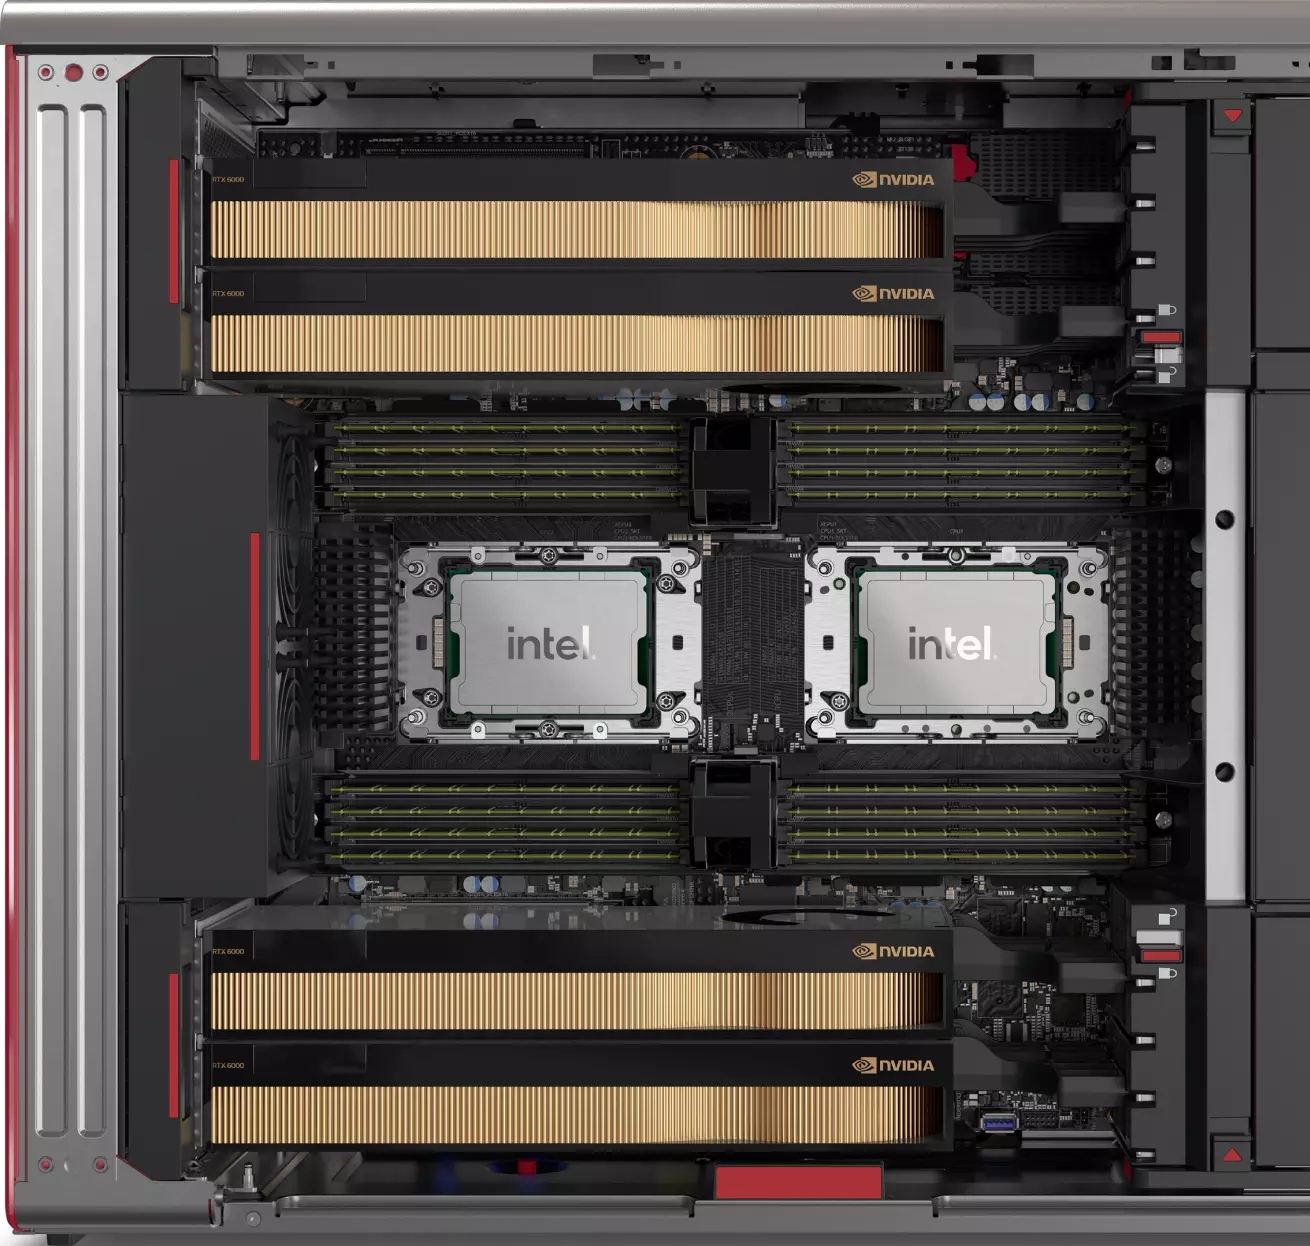 Szczegóły wnętrza Lenovo Workstation PX, przedstawiające dwa procesory, gniazda pamięci i miejsce na cztery karty graficzne